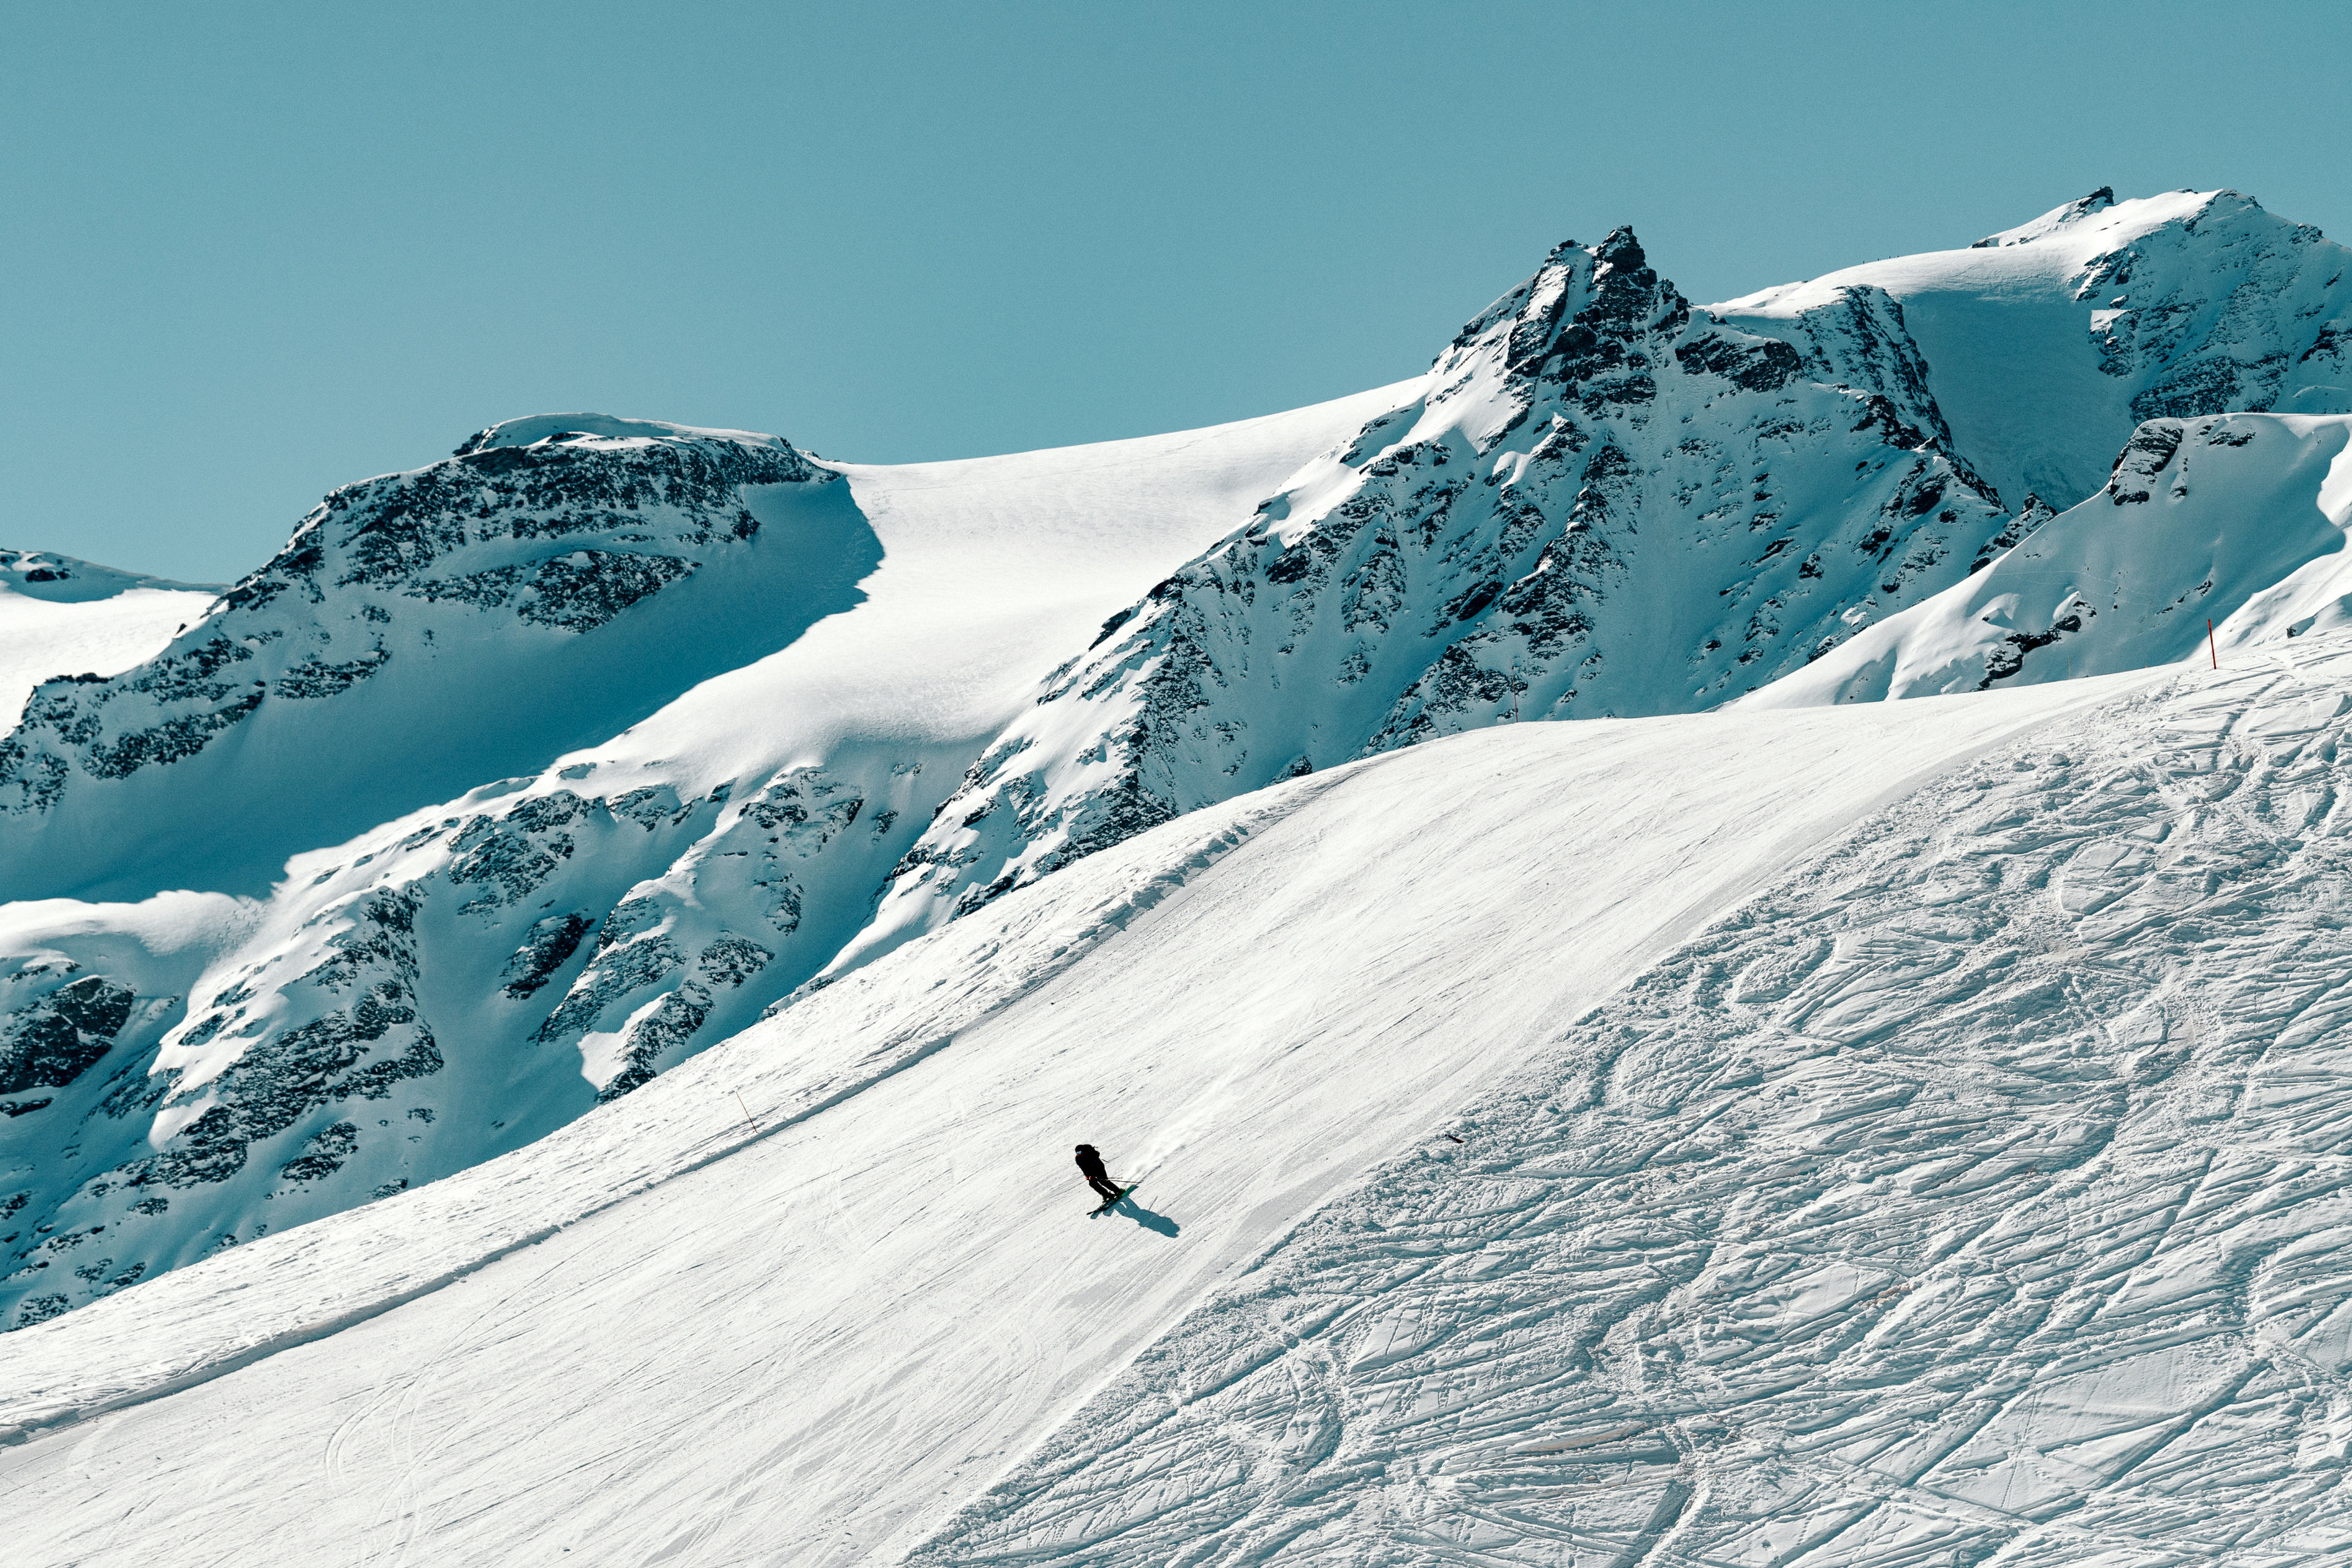 Bergbahnarbeiter Marcio auf der Piste am Ski fahren, Wallis, Schweiz